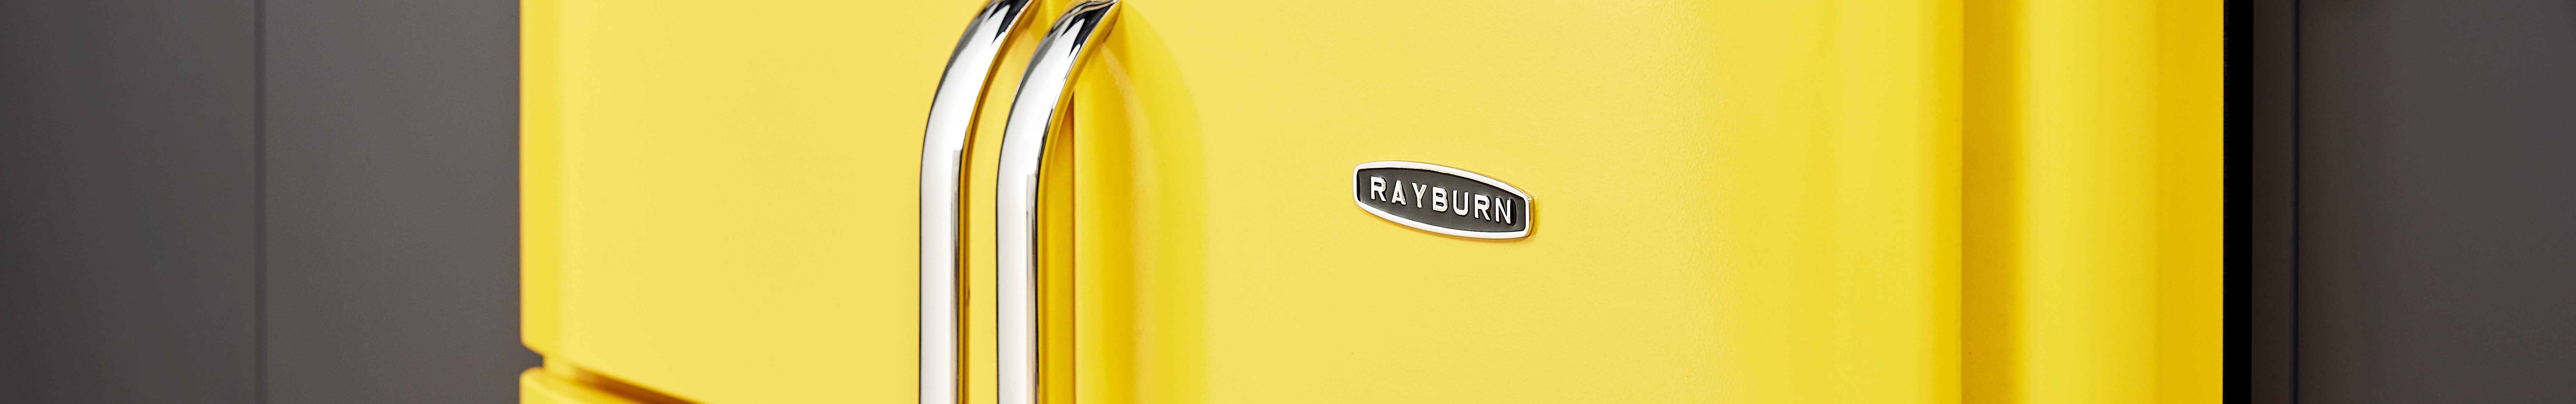 Rayburn Ranger 100-3i in Sunshine Yellow